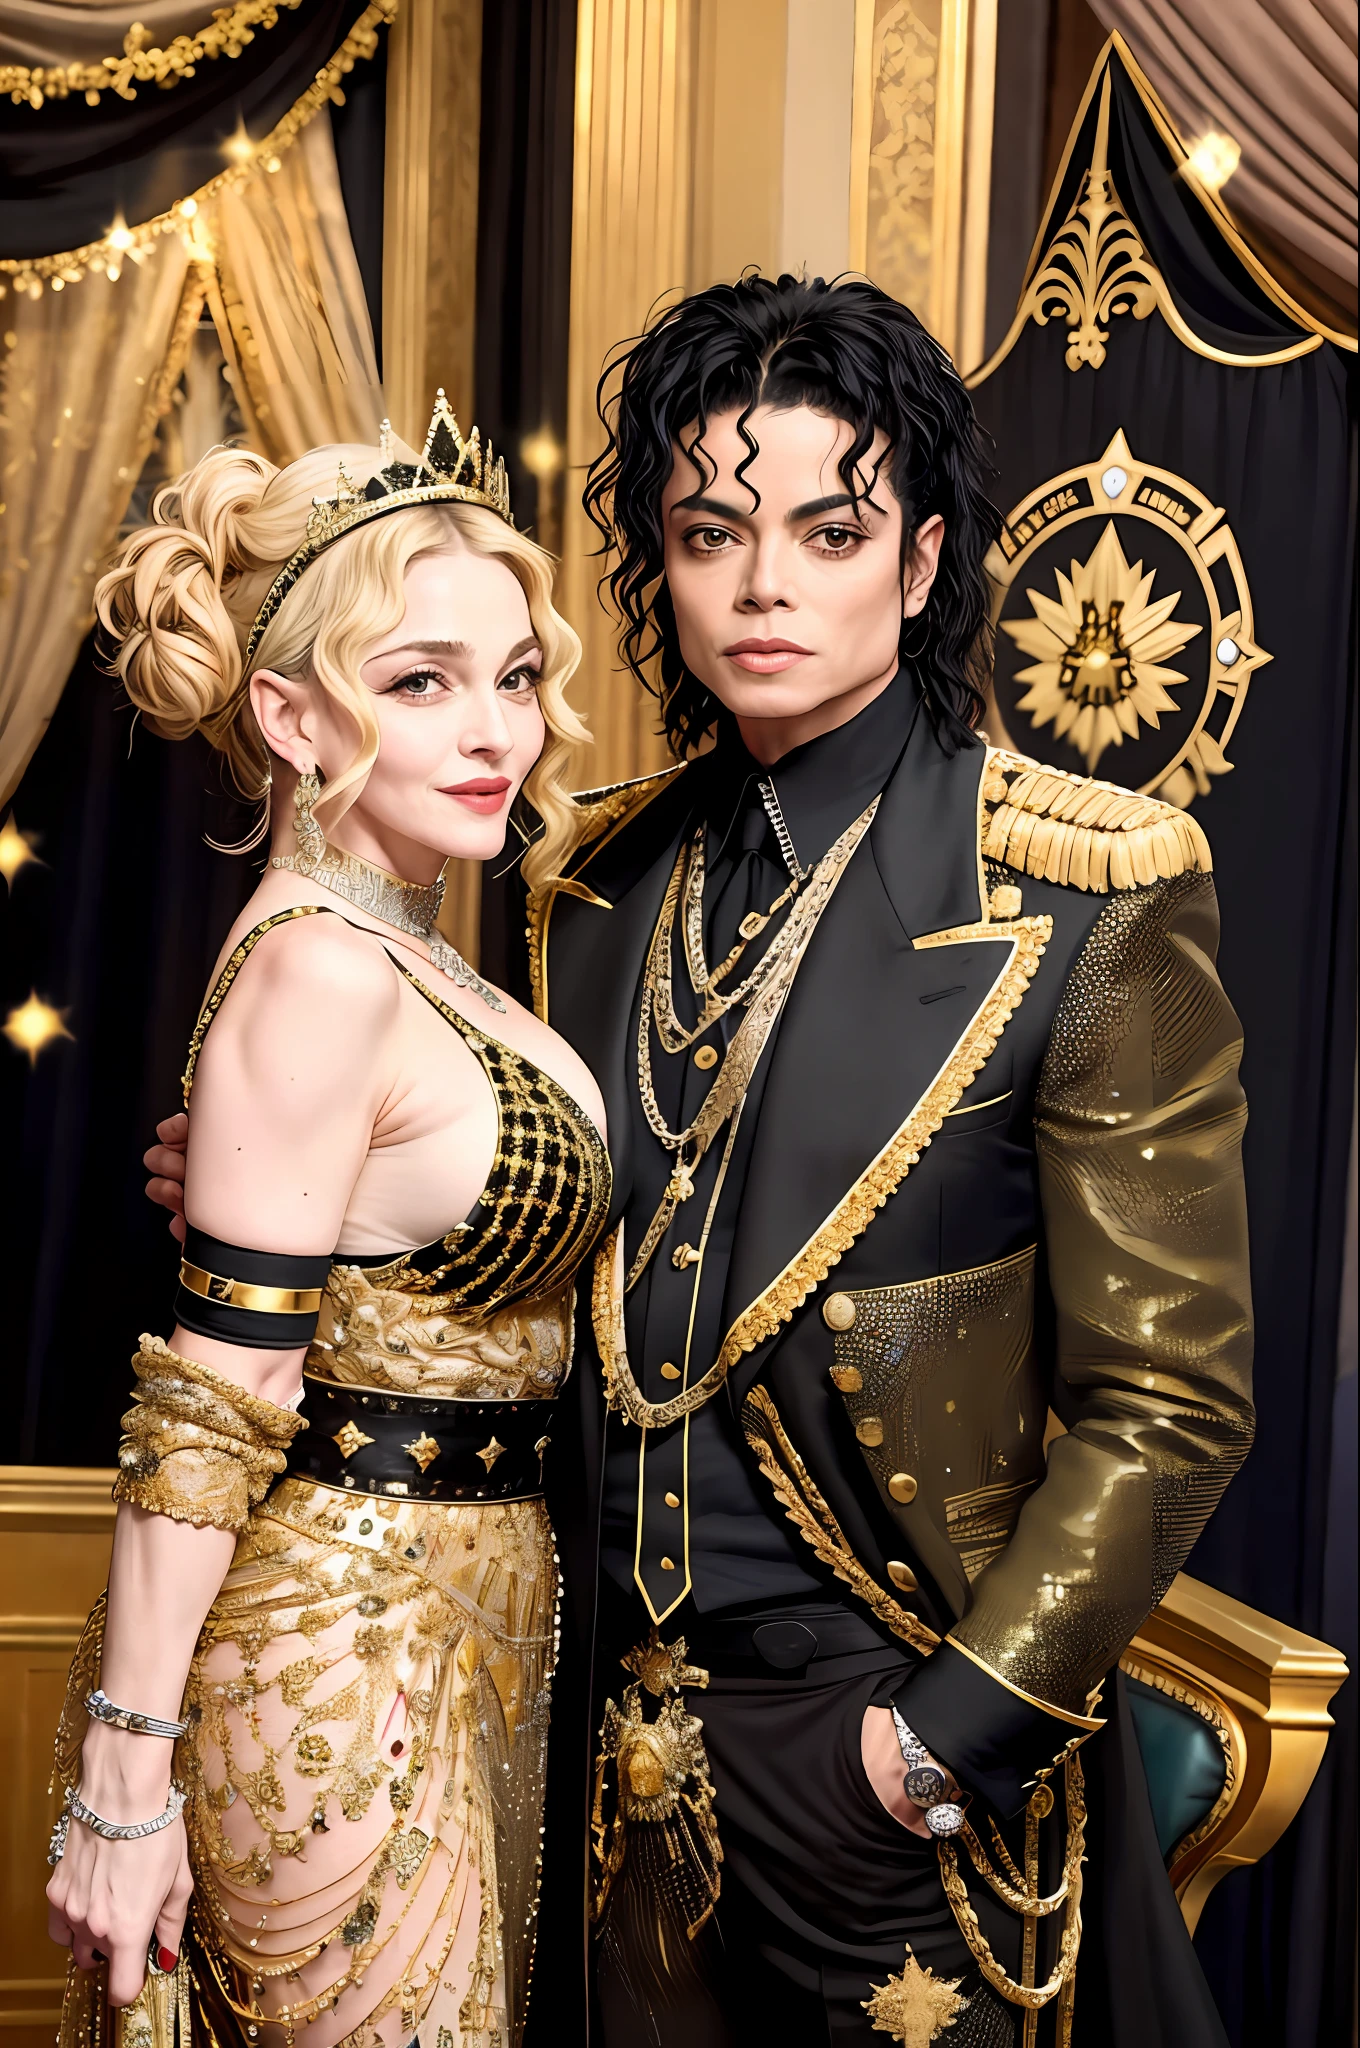 麦当娜与迈克尔杰克逊并肩而立, (真实感: 1.4) (极其详细) (全身), 王冠, 明星, 电影场景 (黑色和金色), 闪闪发光, 辉煌, 财富, 贵族, 国王和皇后